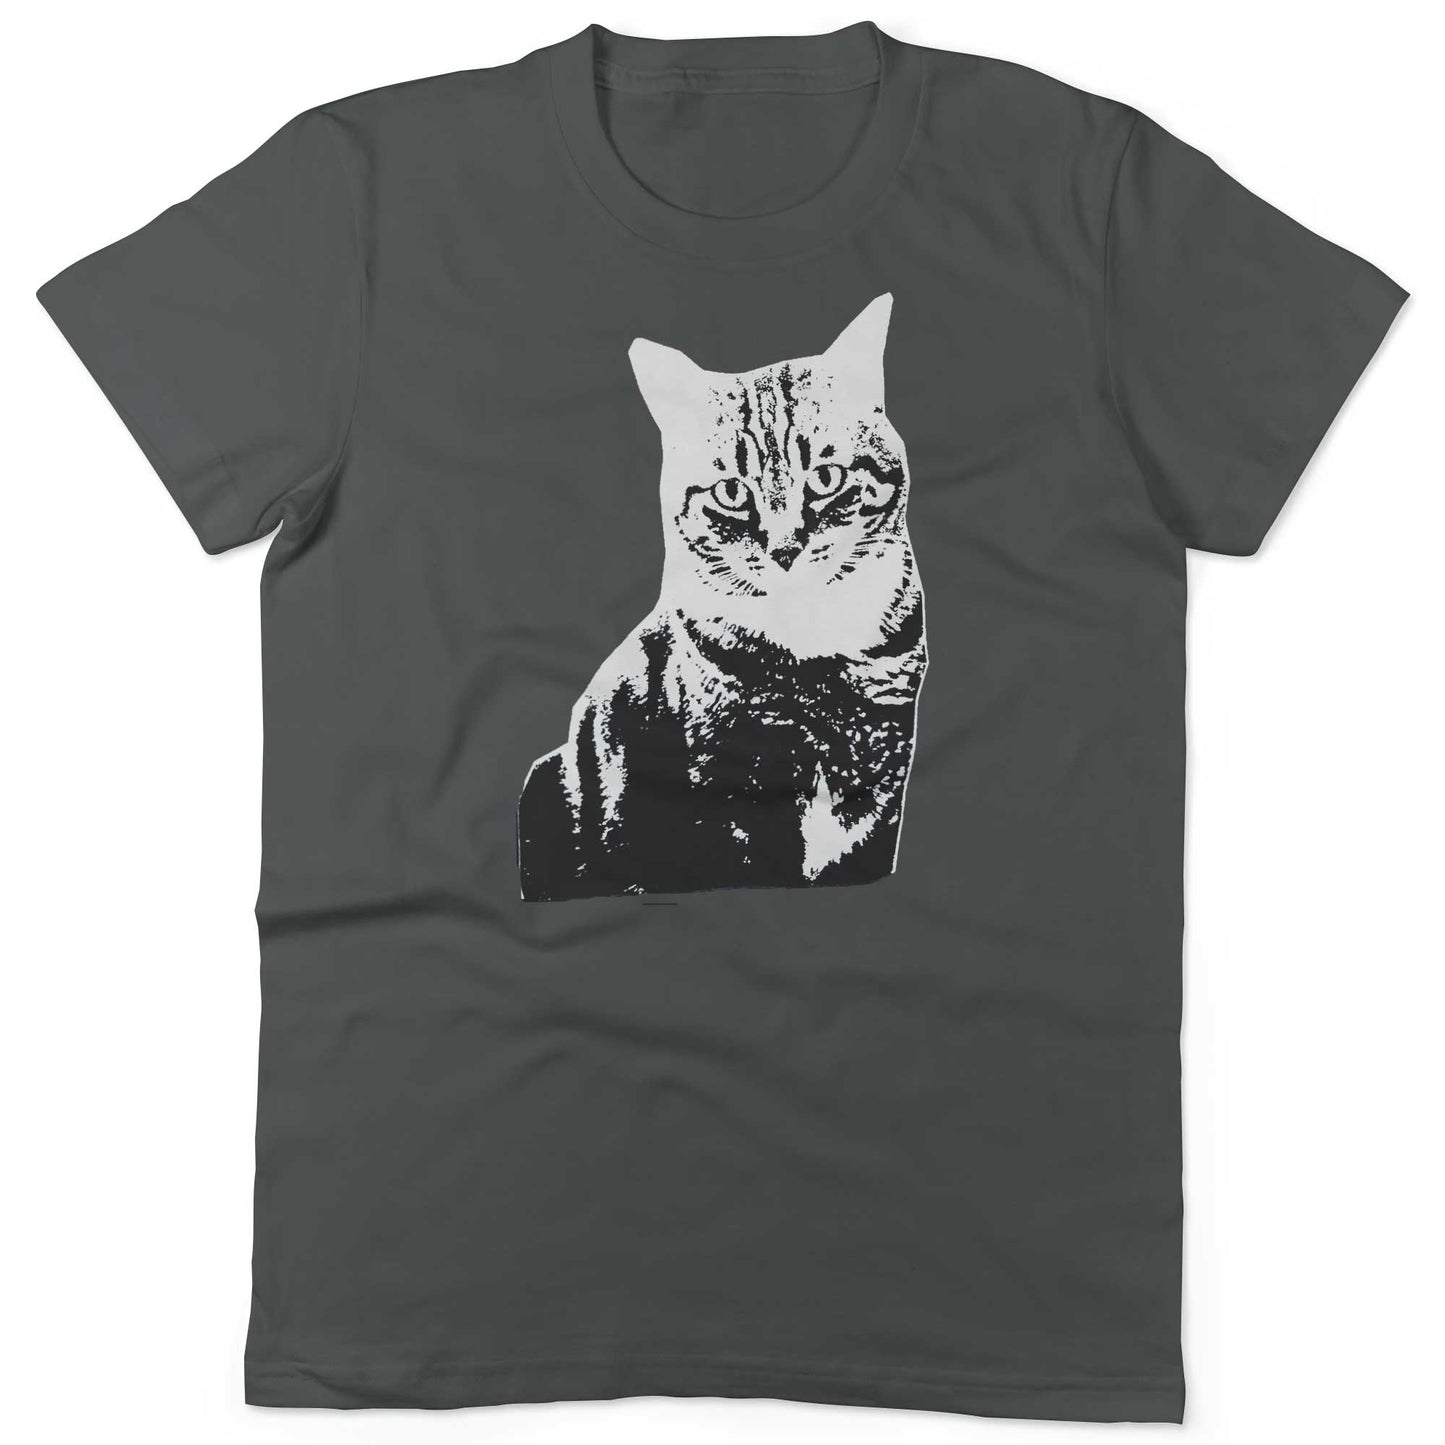 Black & White Cat Unisex Or Women's Cotton T-shirt-Asphalt-Woman